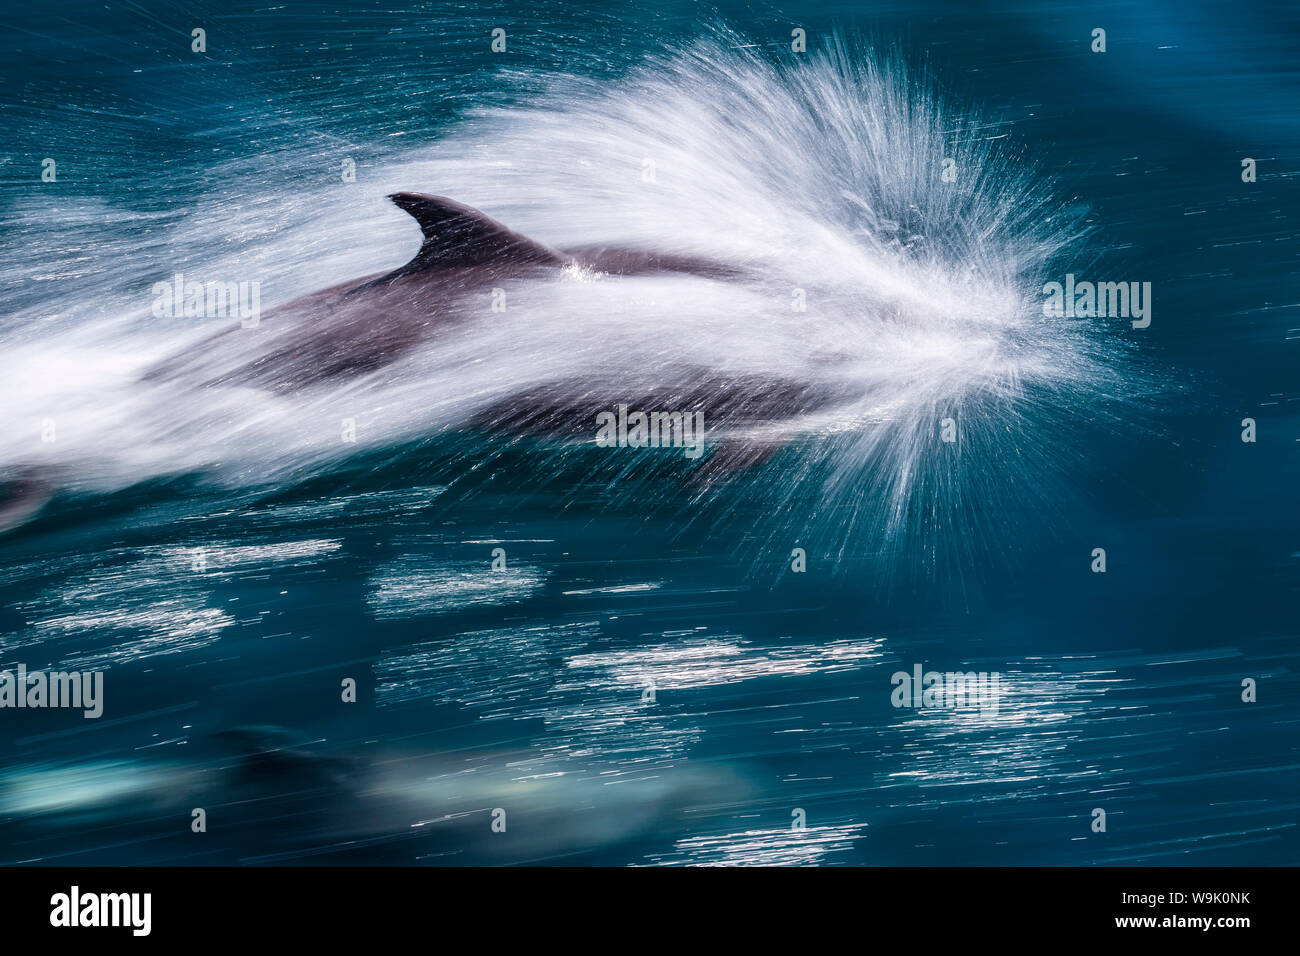 Adulto el delfín mular (Tursiops truncatus), motion blur imagen fuera de la Isla San Pedro Martir, Baja California Norte, México, América del Norte Foto de stock